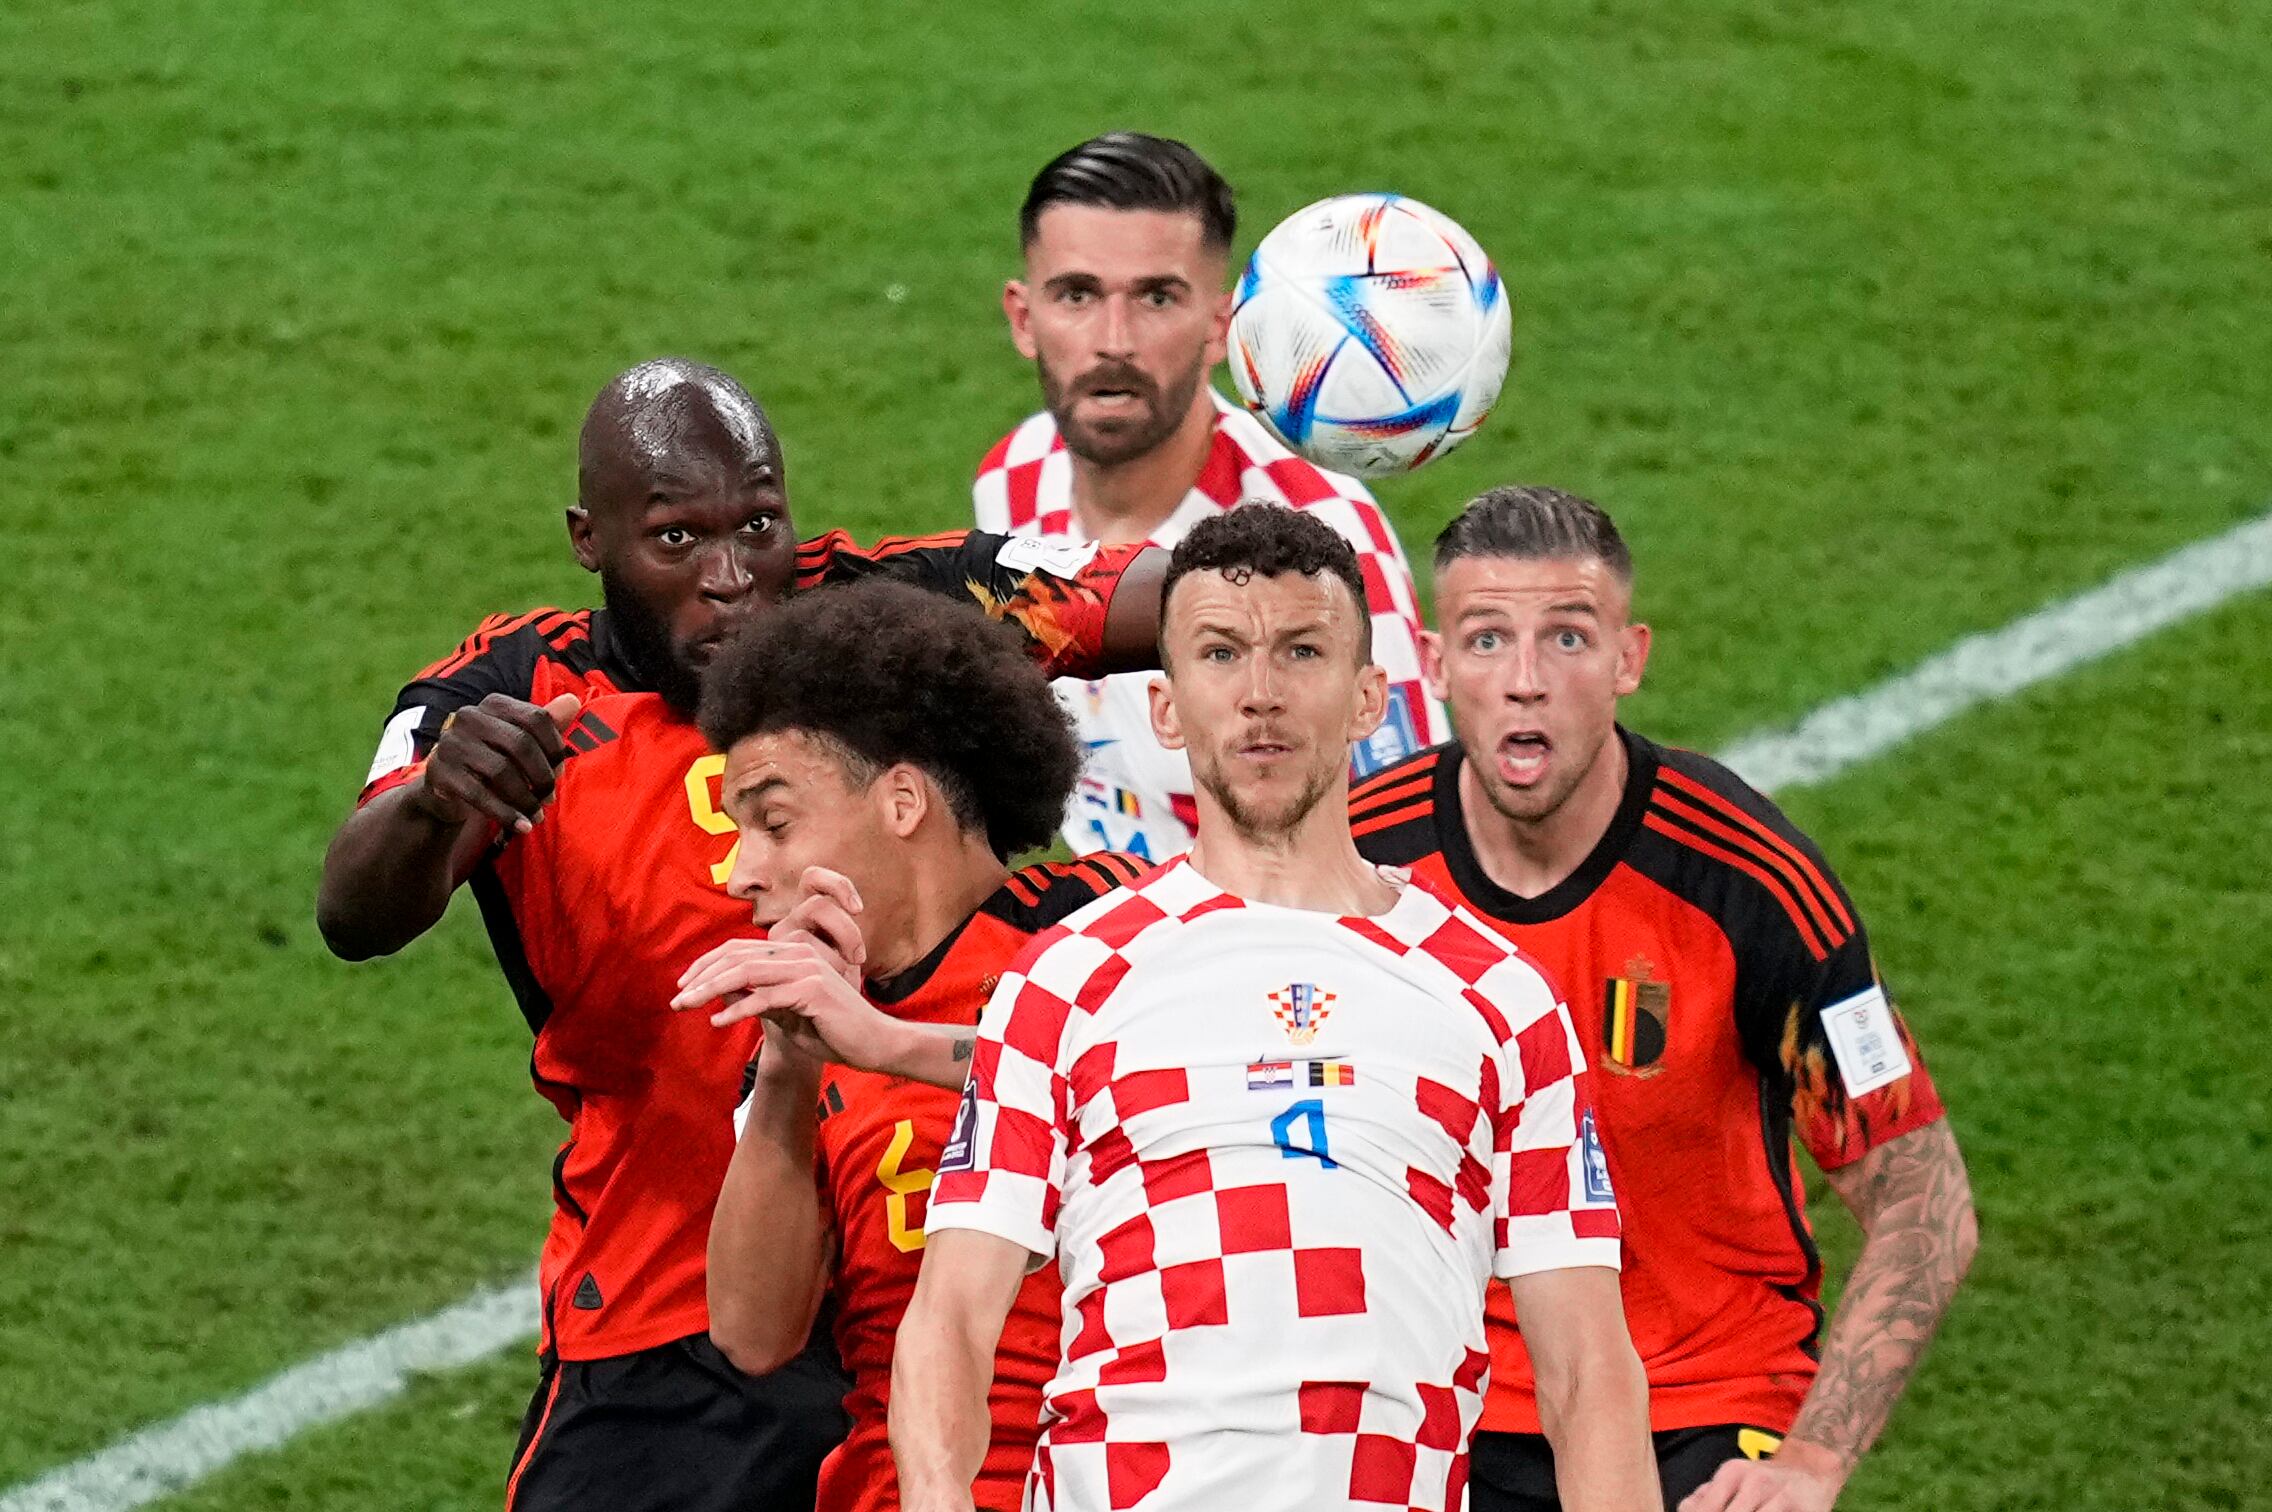 El croata Ivan Perisic (delante) pelea un balón aéreo con los belgas  Romelu Lukaku (izquierda), Axel Witsel (detrás) y Toby Alderweireld (derecha), durante el partido entre Bélgica y Croacia. 